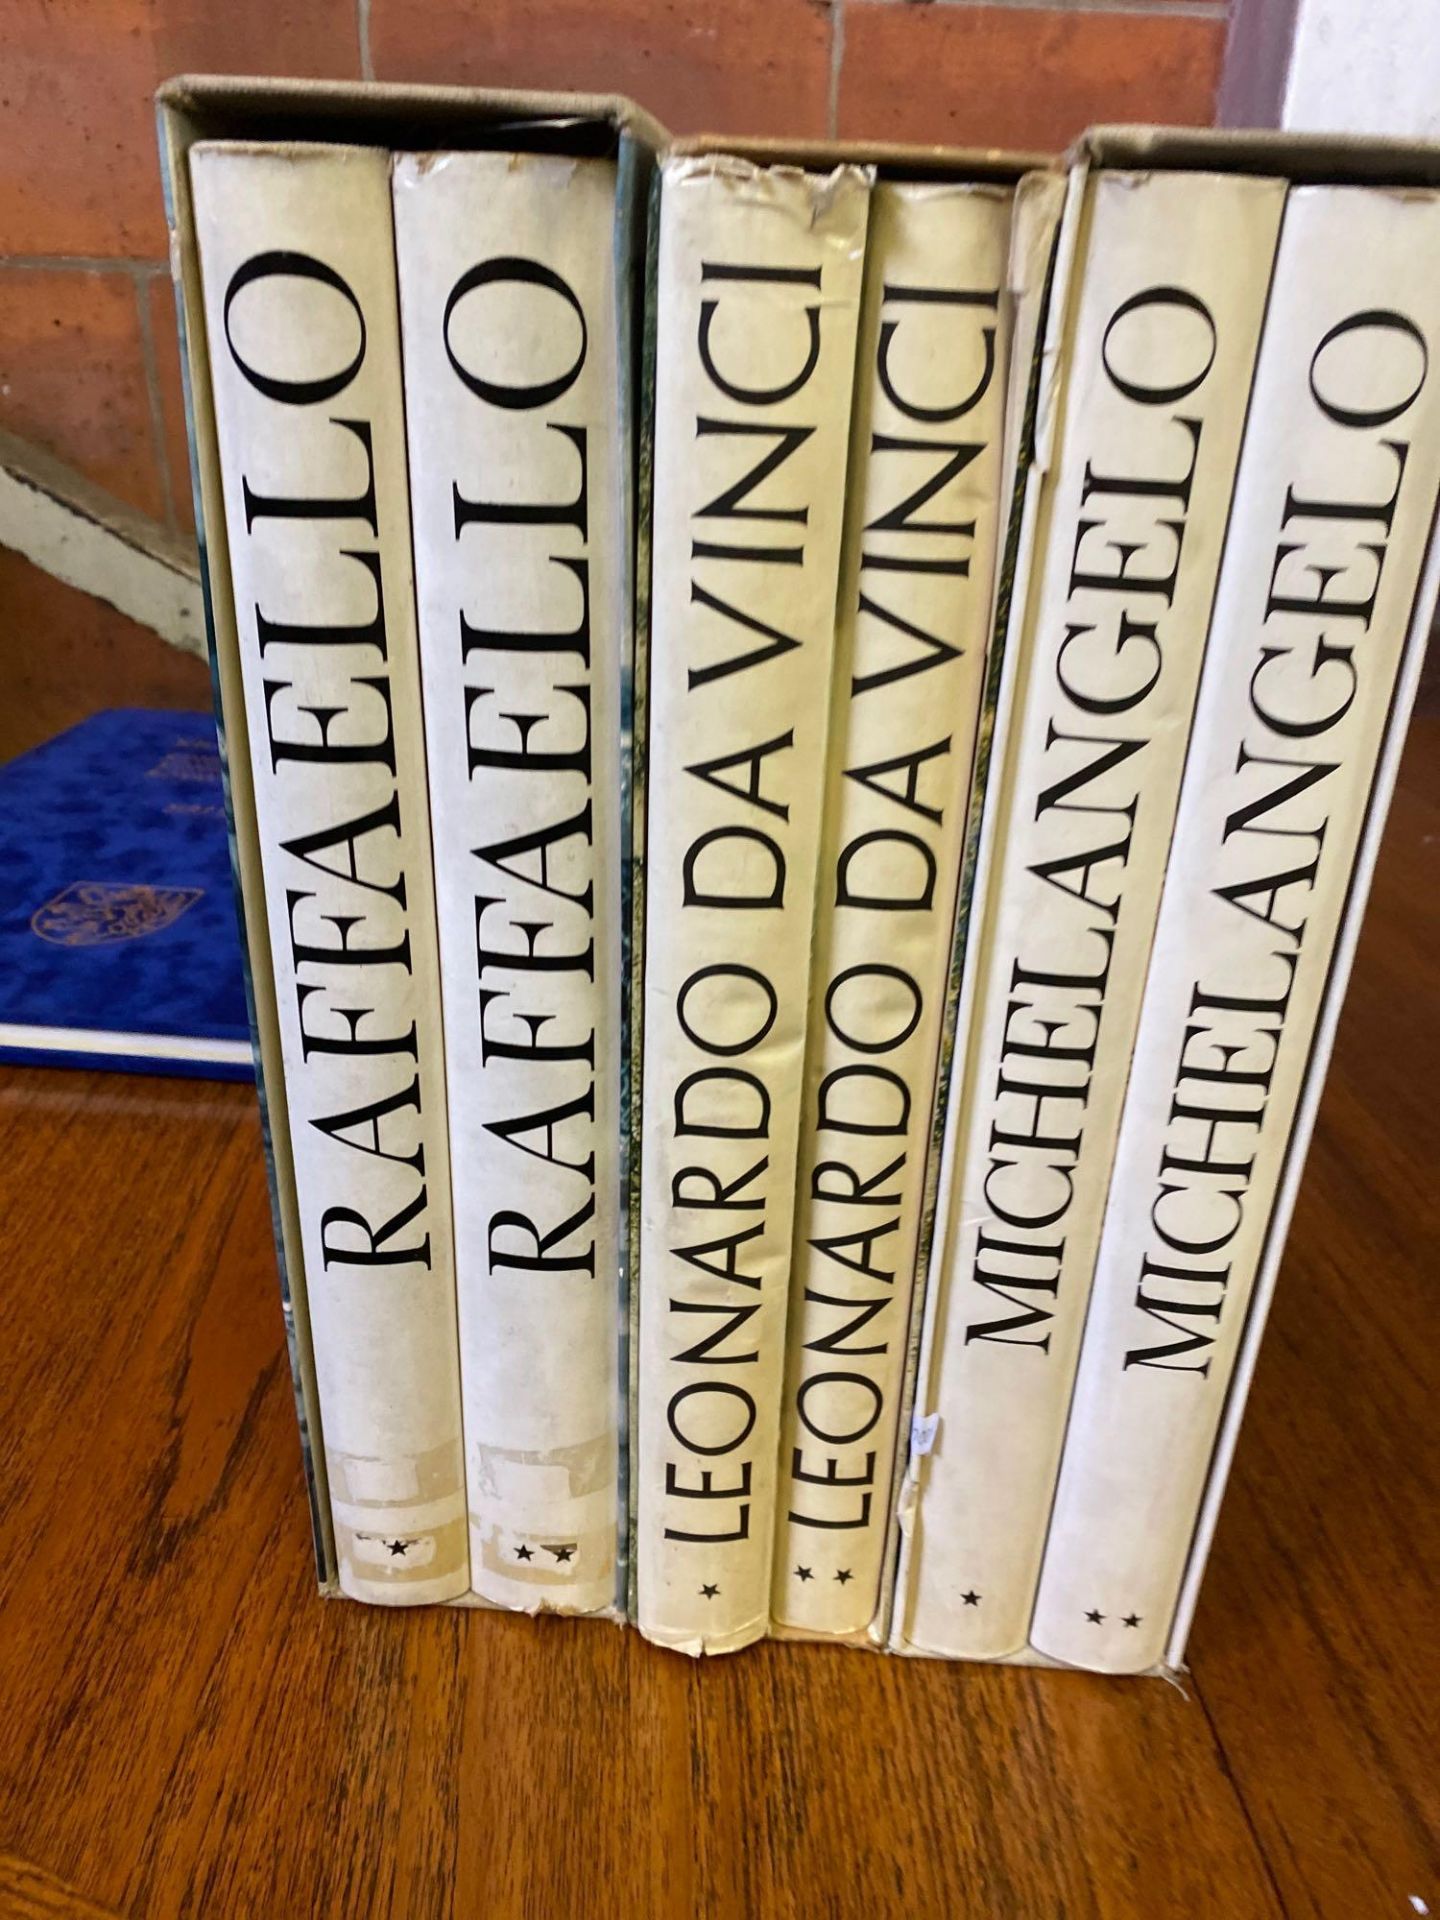 Three box sets of books on Raffaello, Leonardo da Vinci and Michelangelo